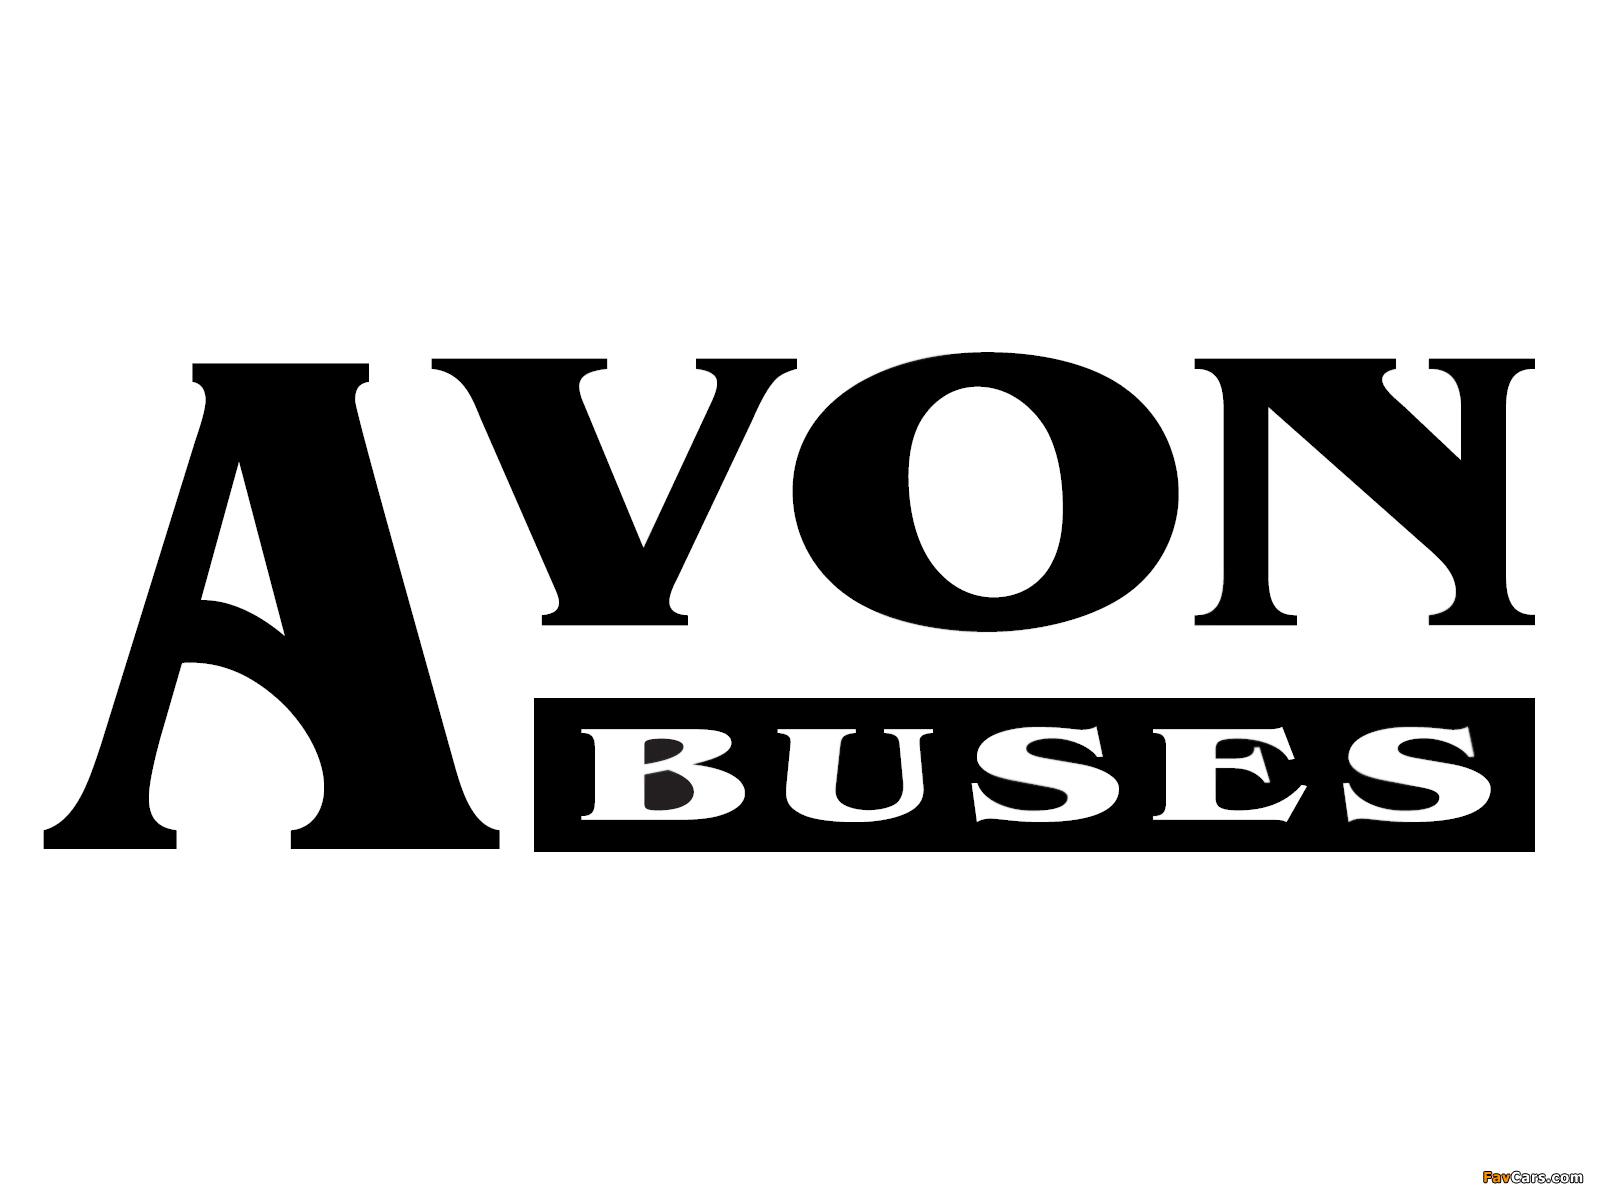 Avon Buses wallpaper (1600x1200)